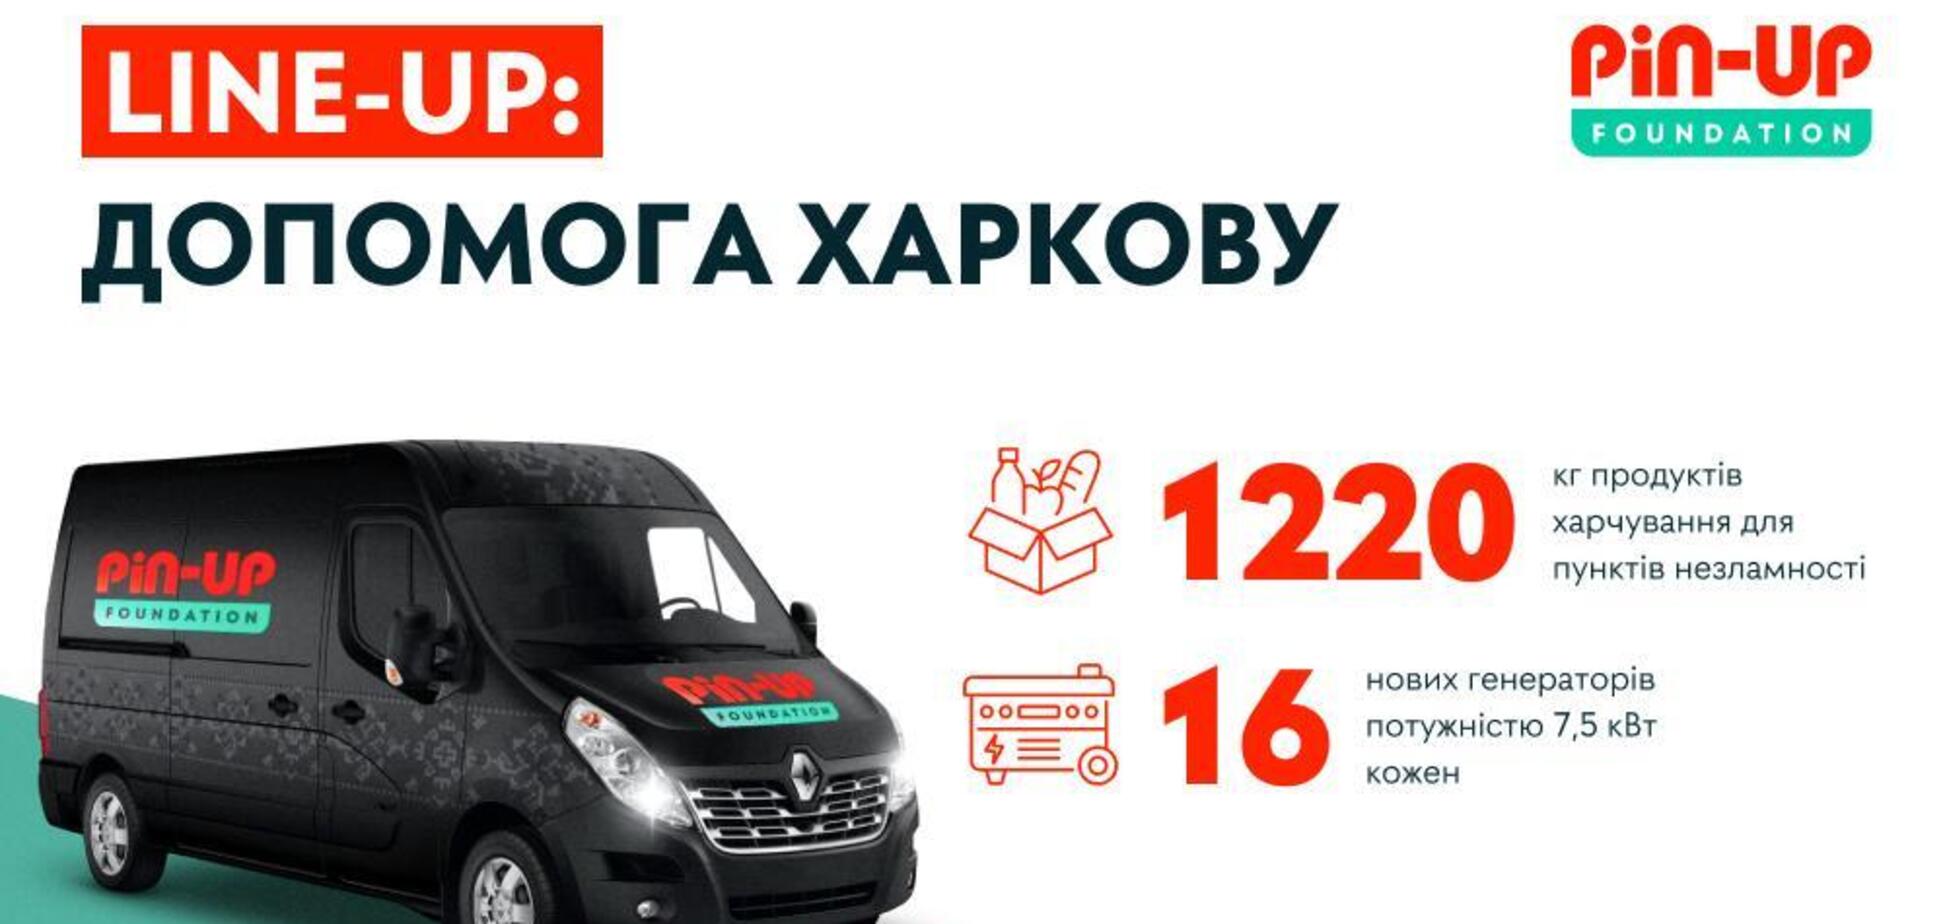 Пункты несокрушимости в Харькове получили генераторы от PIN-UP Foundation